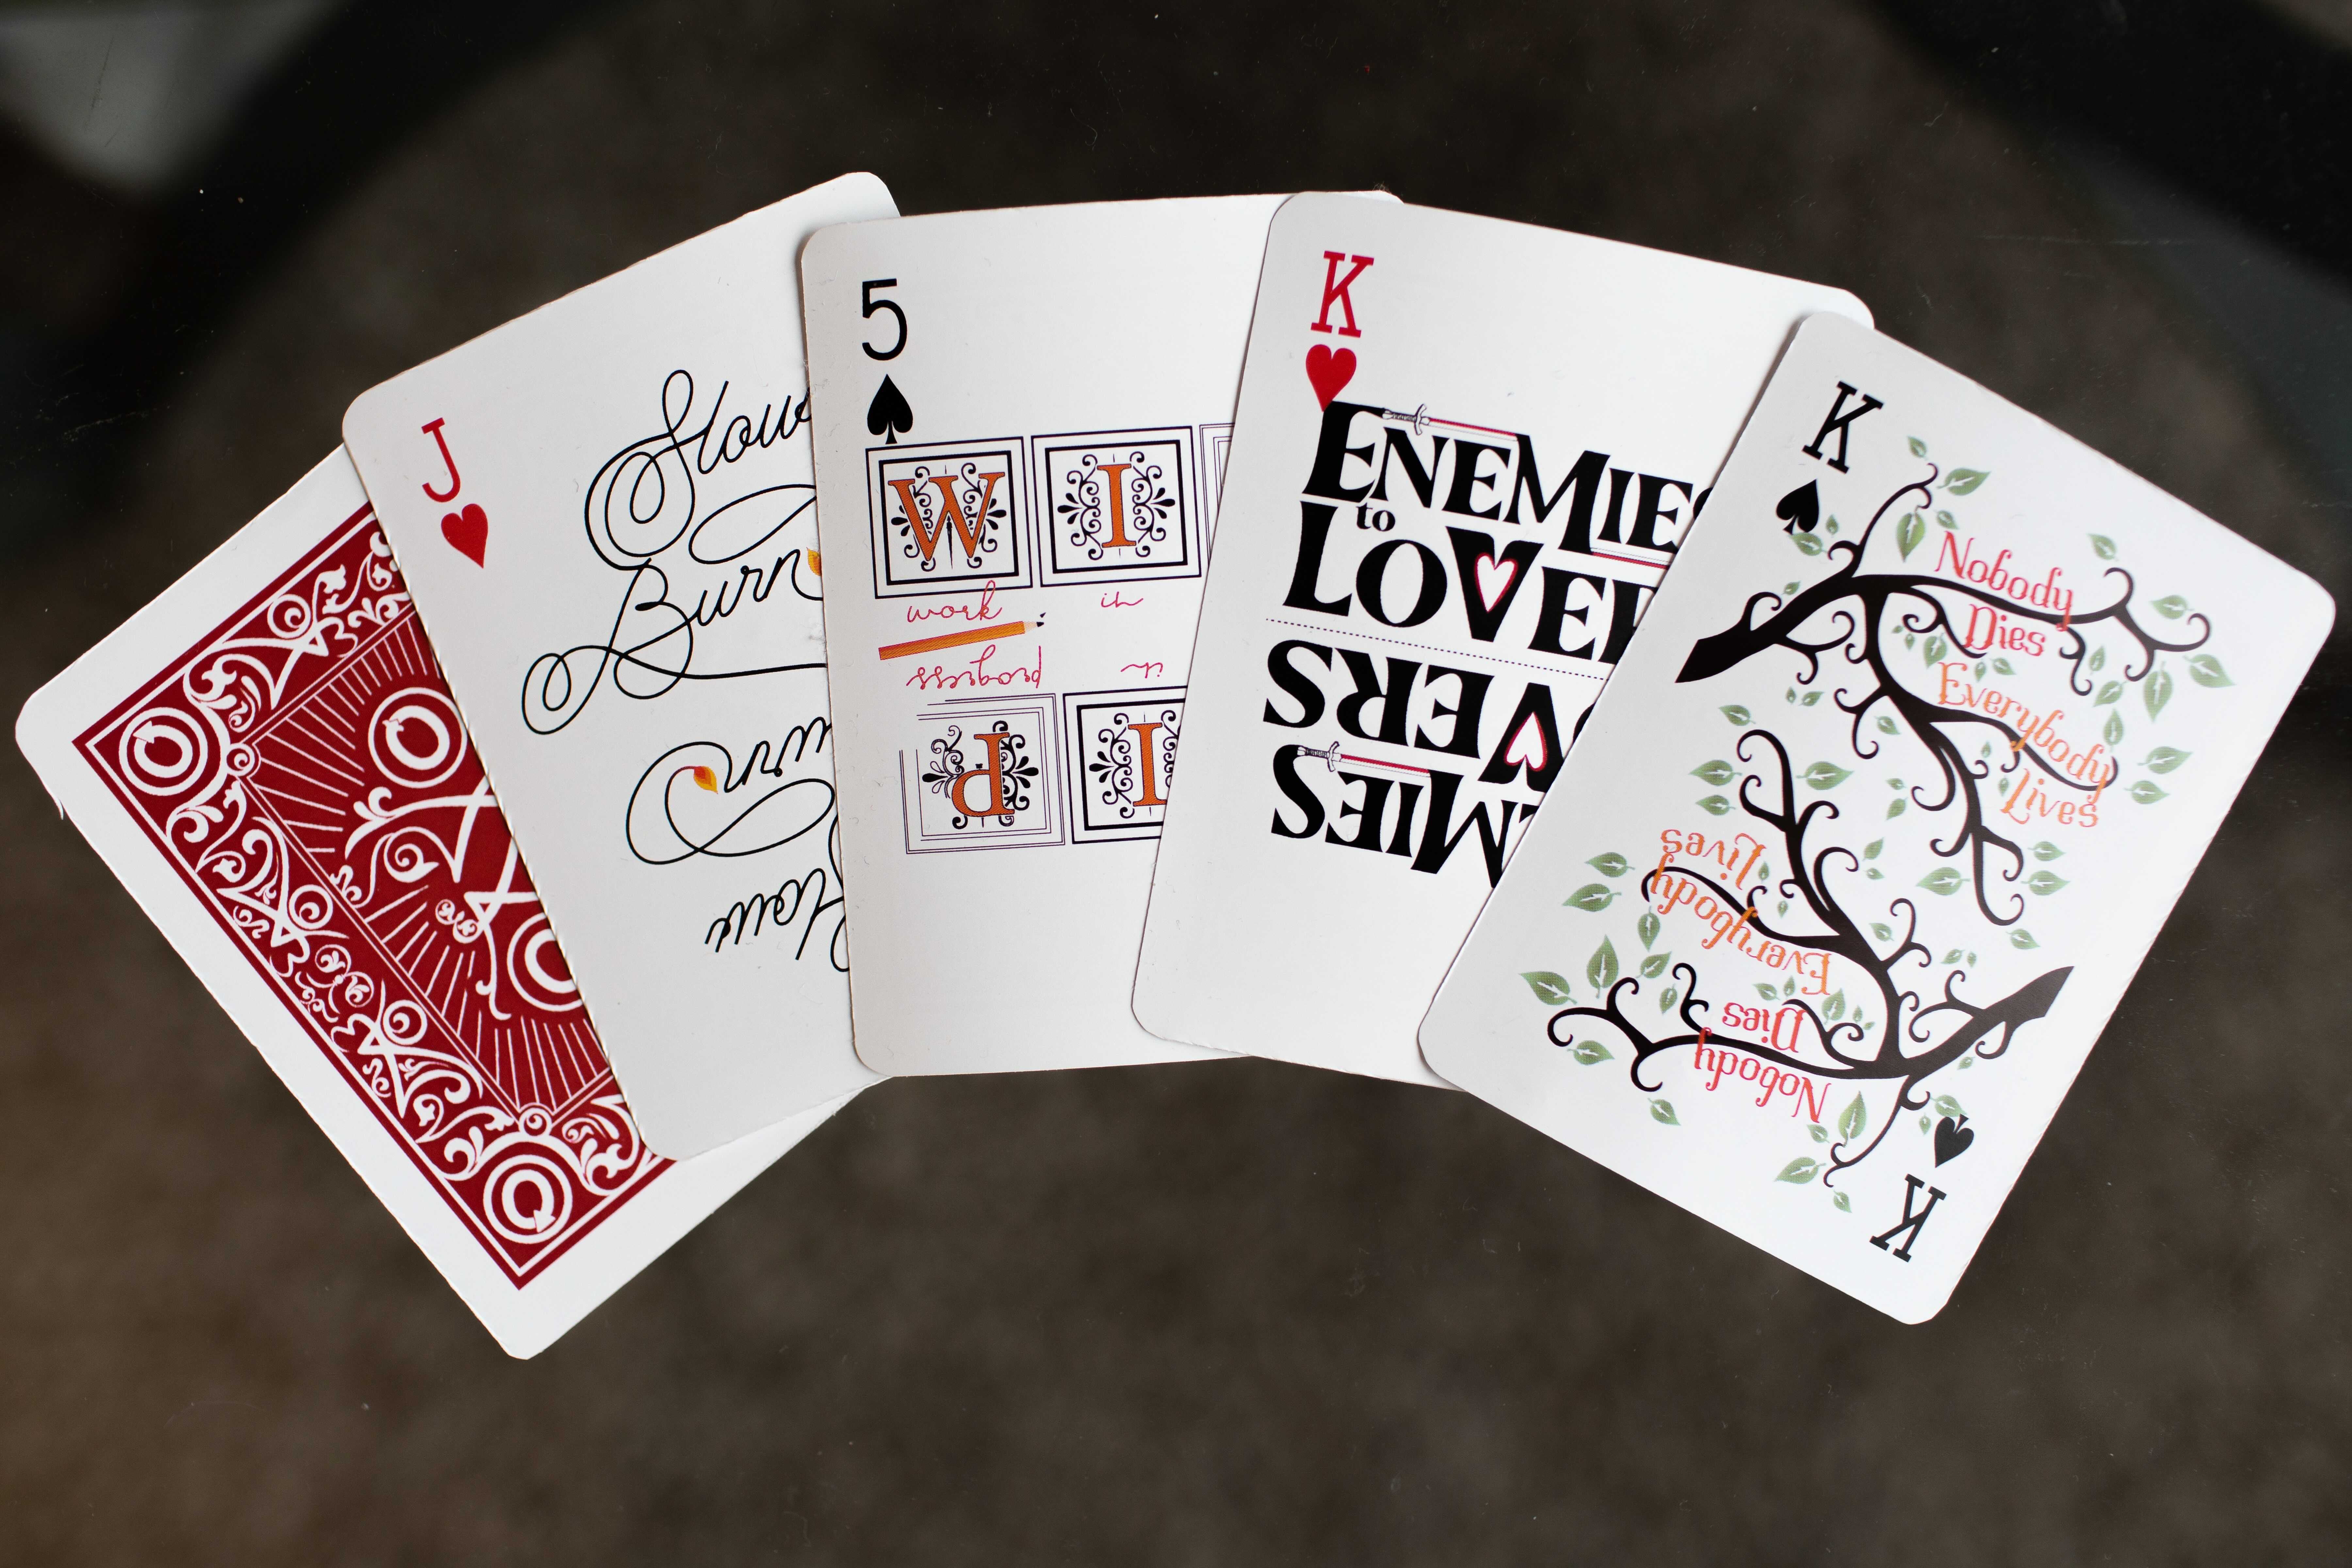 Illustrerede spillekort, der hver især repræsenterer et fankoncept: "Everybody Lives, Nobody Dies" er skrevet på grenene af et træ, "Enemies to Lovers" er dekoreret med sværd, initialerne til "Work in Progress" er oplyste, og det sidste kort med "Slow Burn" ender på en tændt flamme. Et vendt kort viser bagsidens illustration, der inkluderer AO3-logoet.